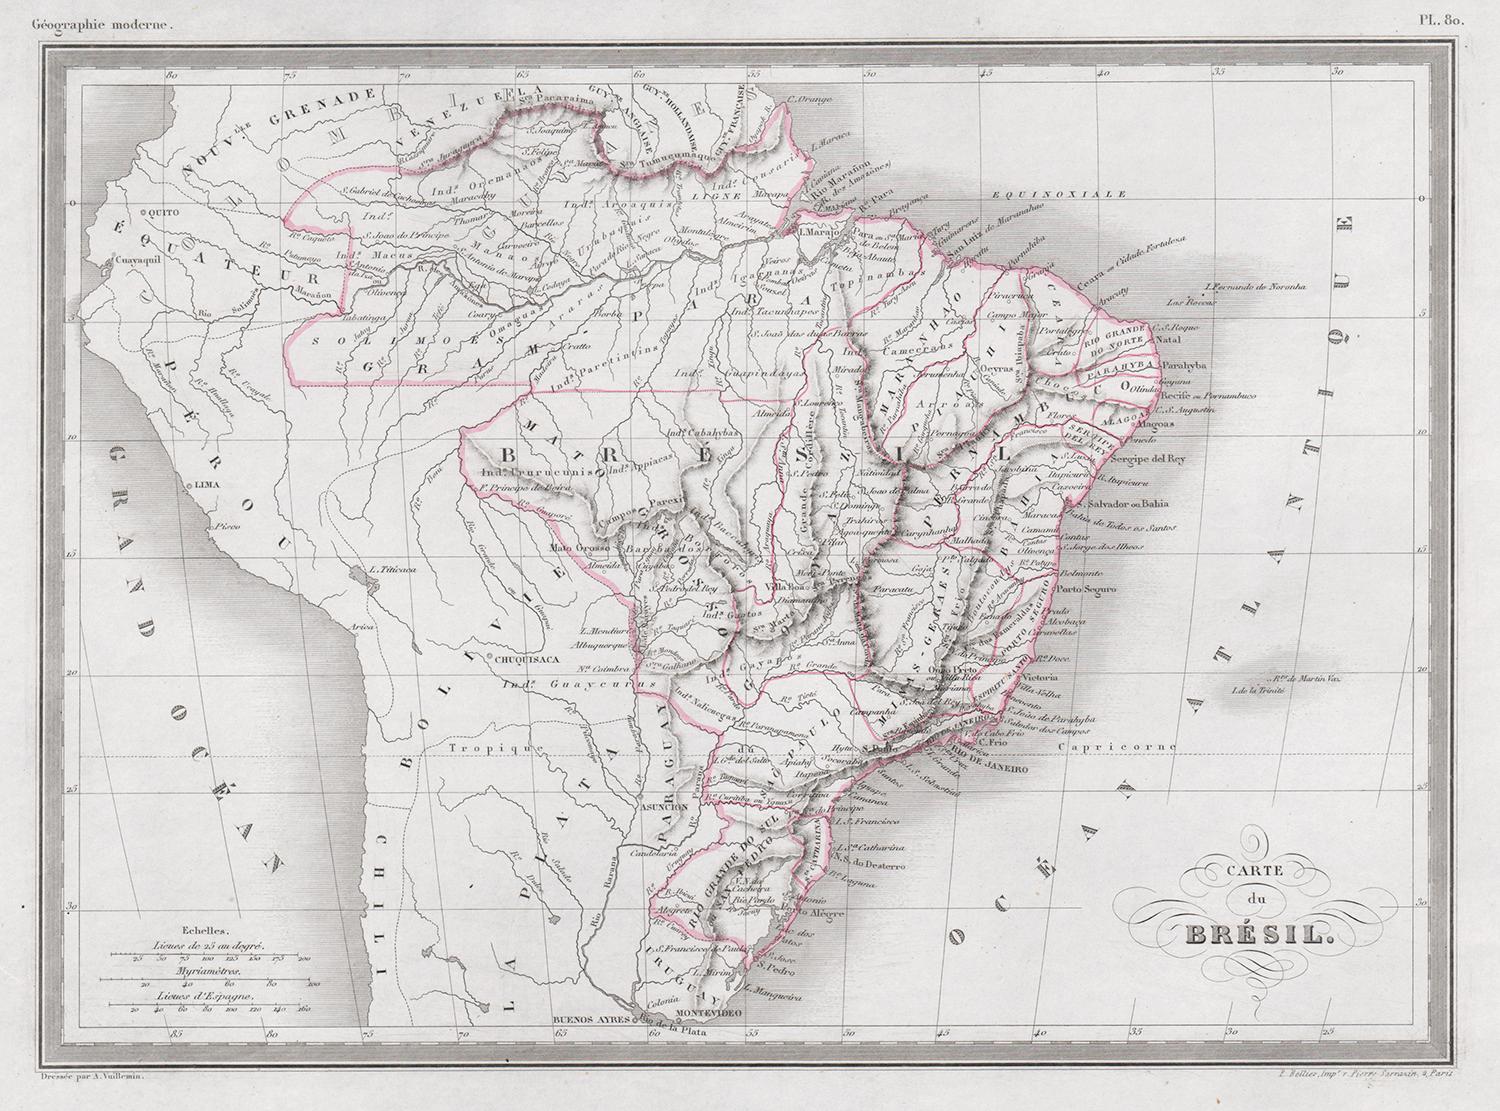 Carte du Bresil, antique 1860s engraved map of Brazil